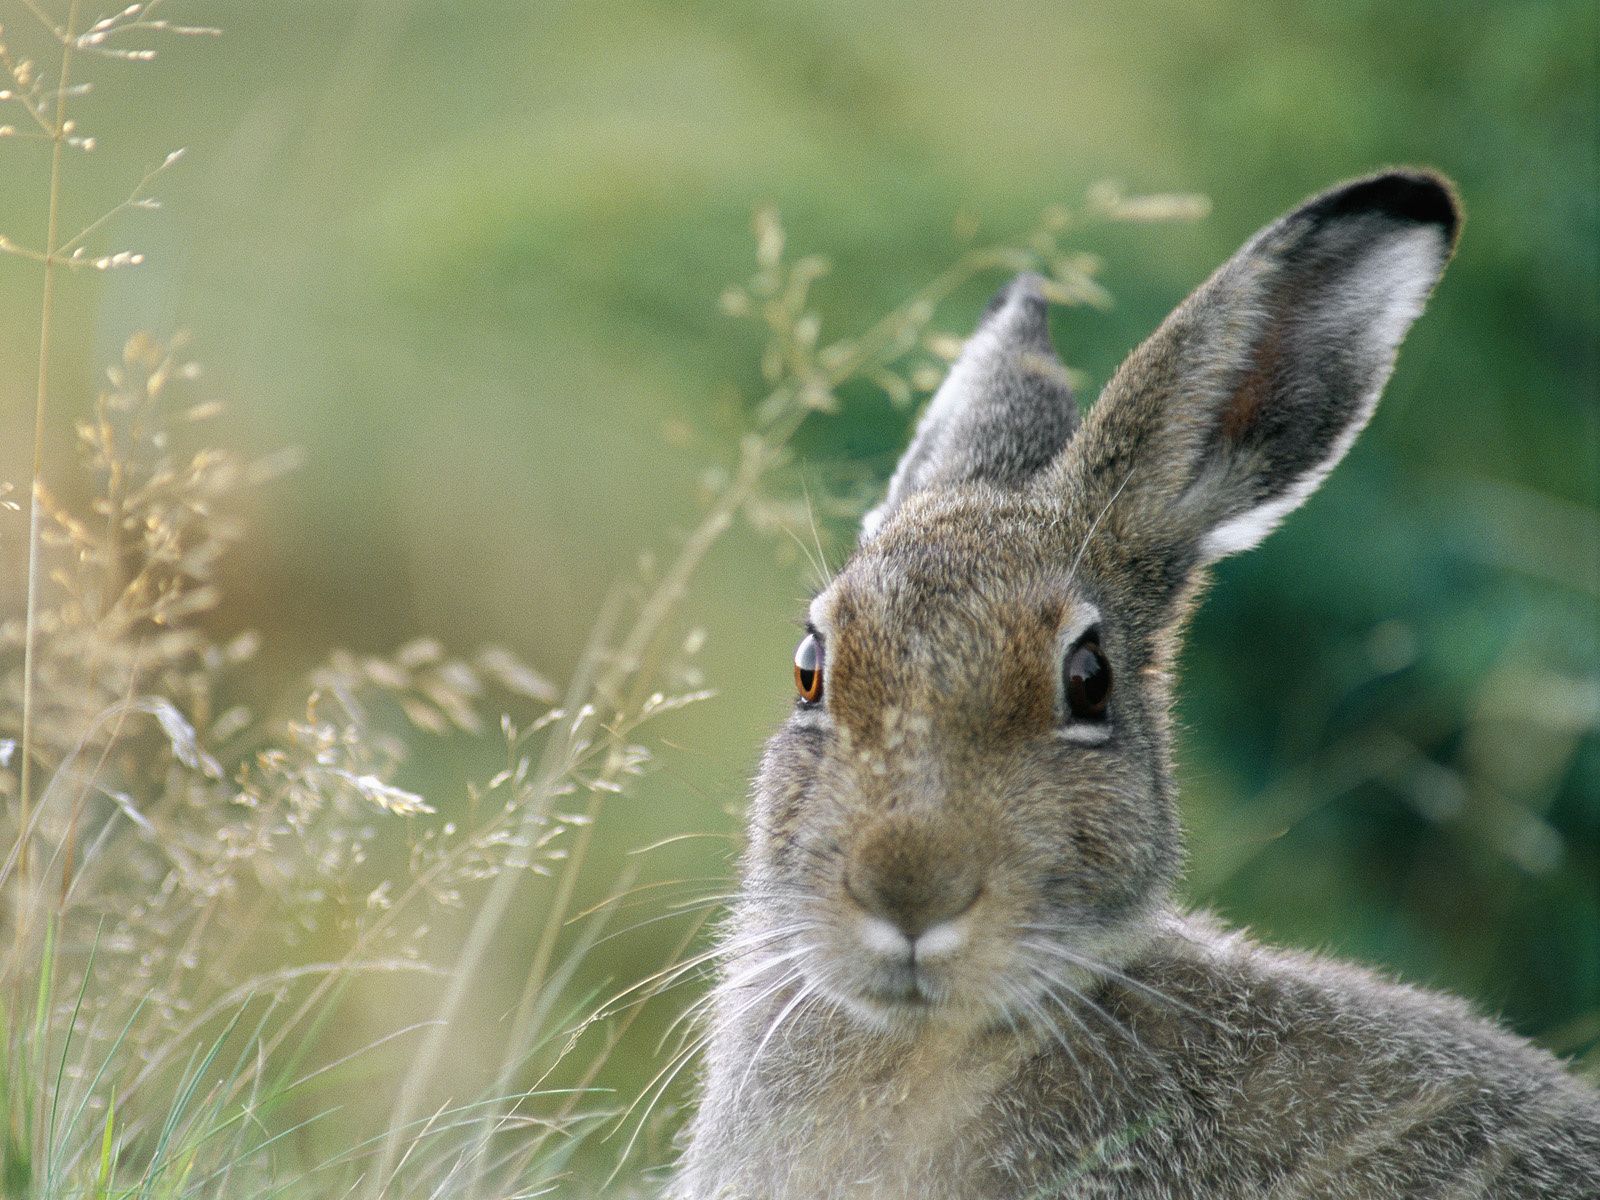 عکسی جالب با بهترین زاویه عکاسی از خرگوش وحشی